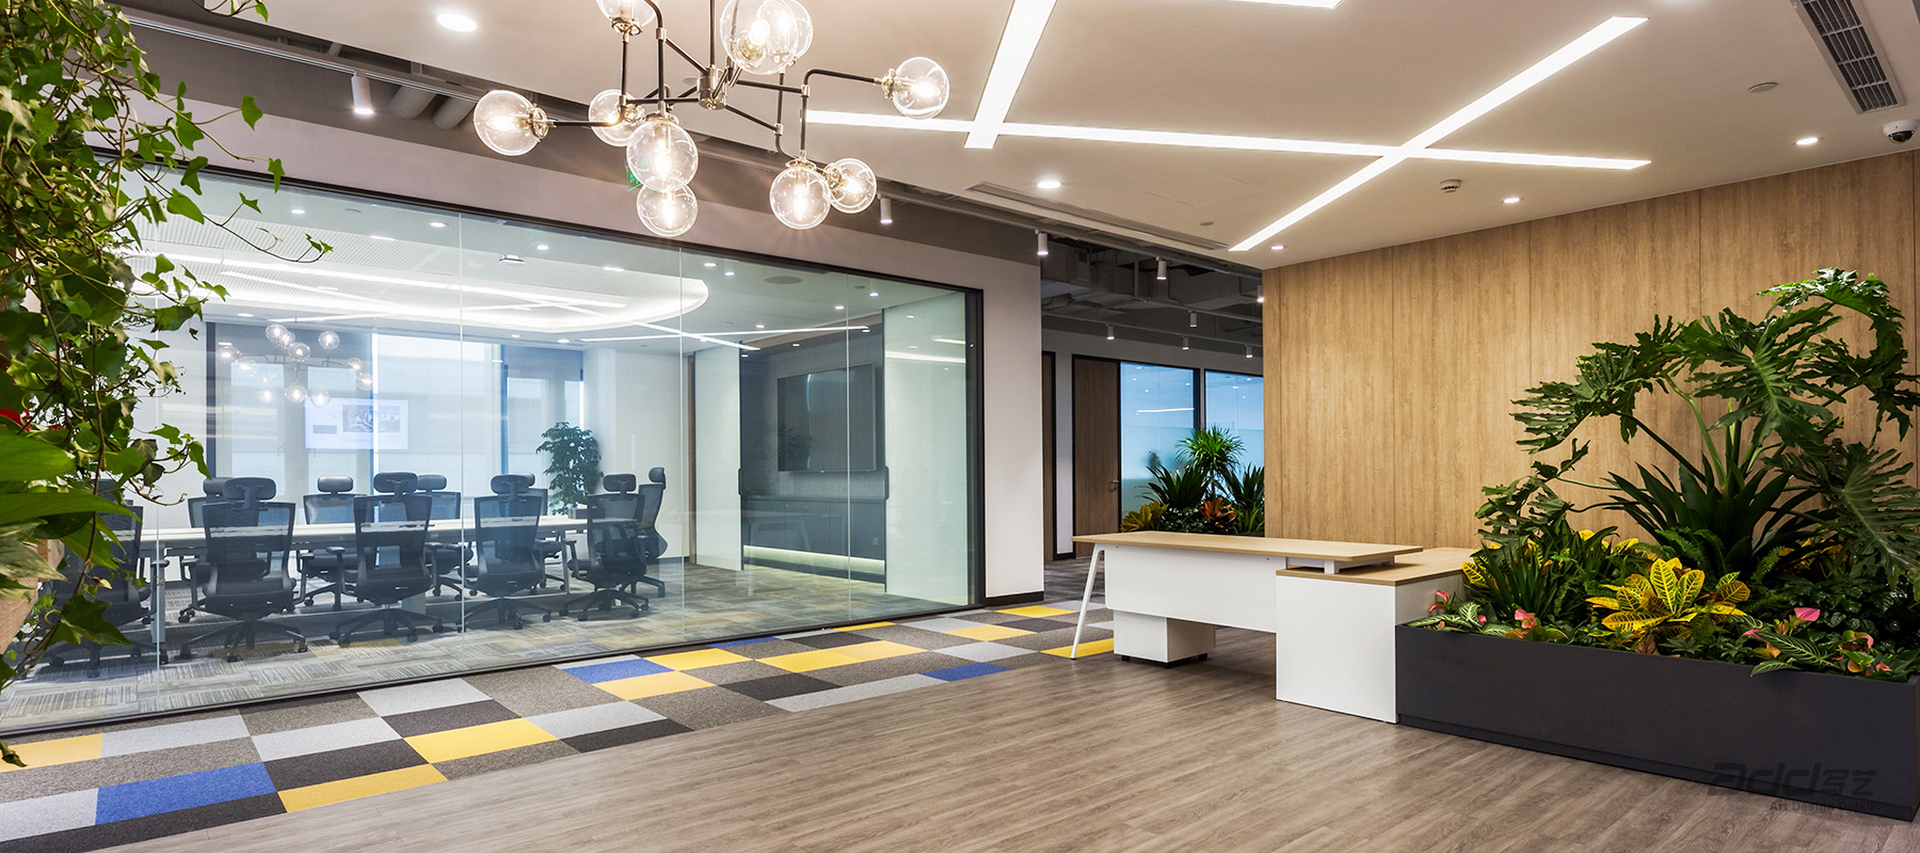 汇纳科技办公空间设计-办公区走廊2-pc